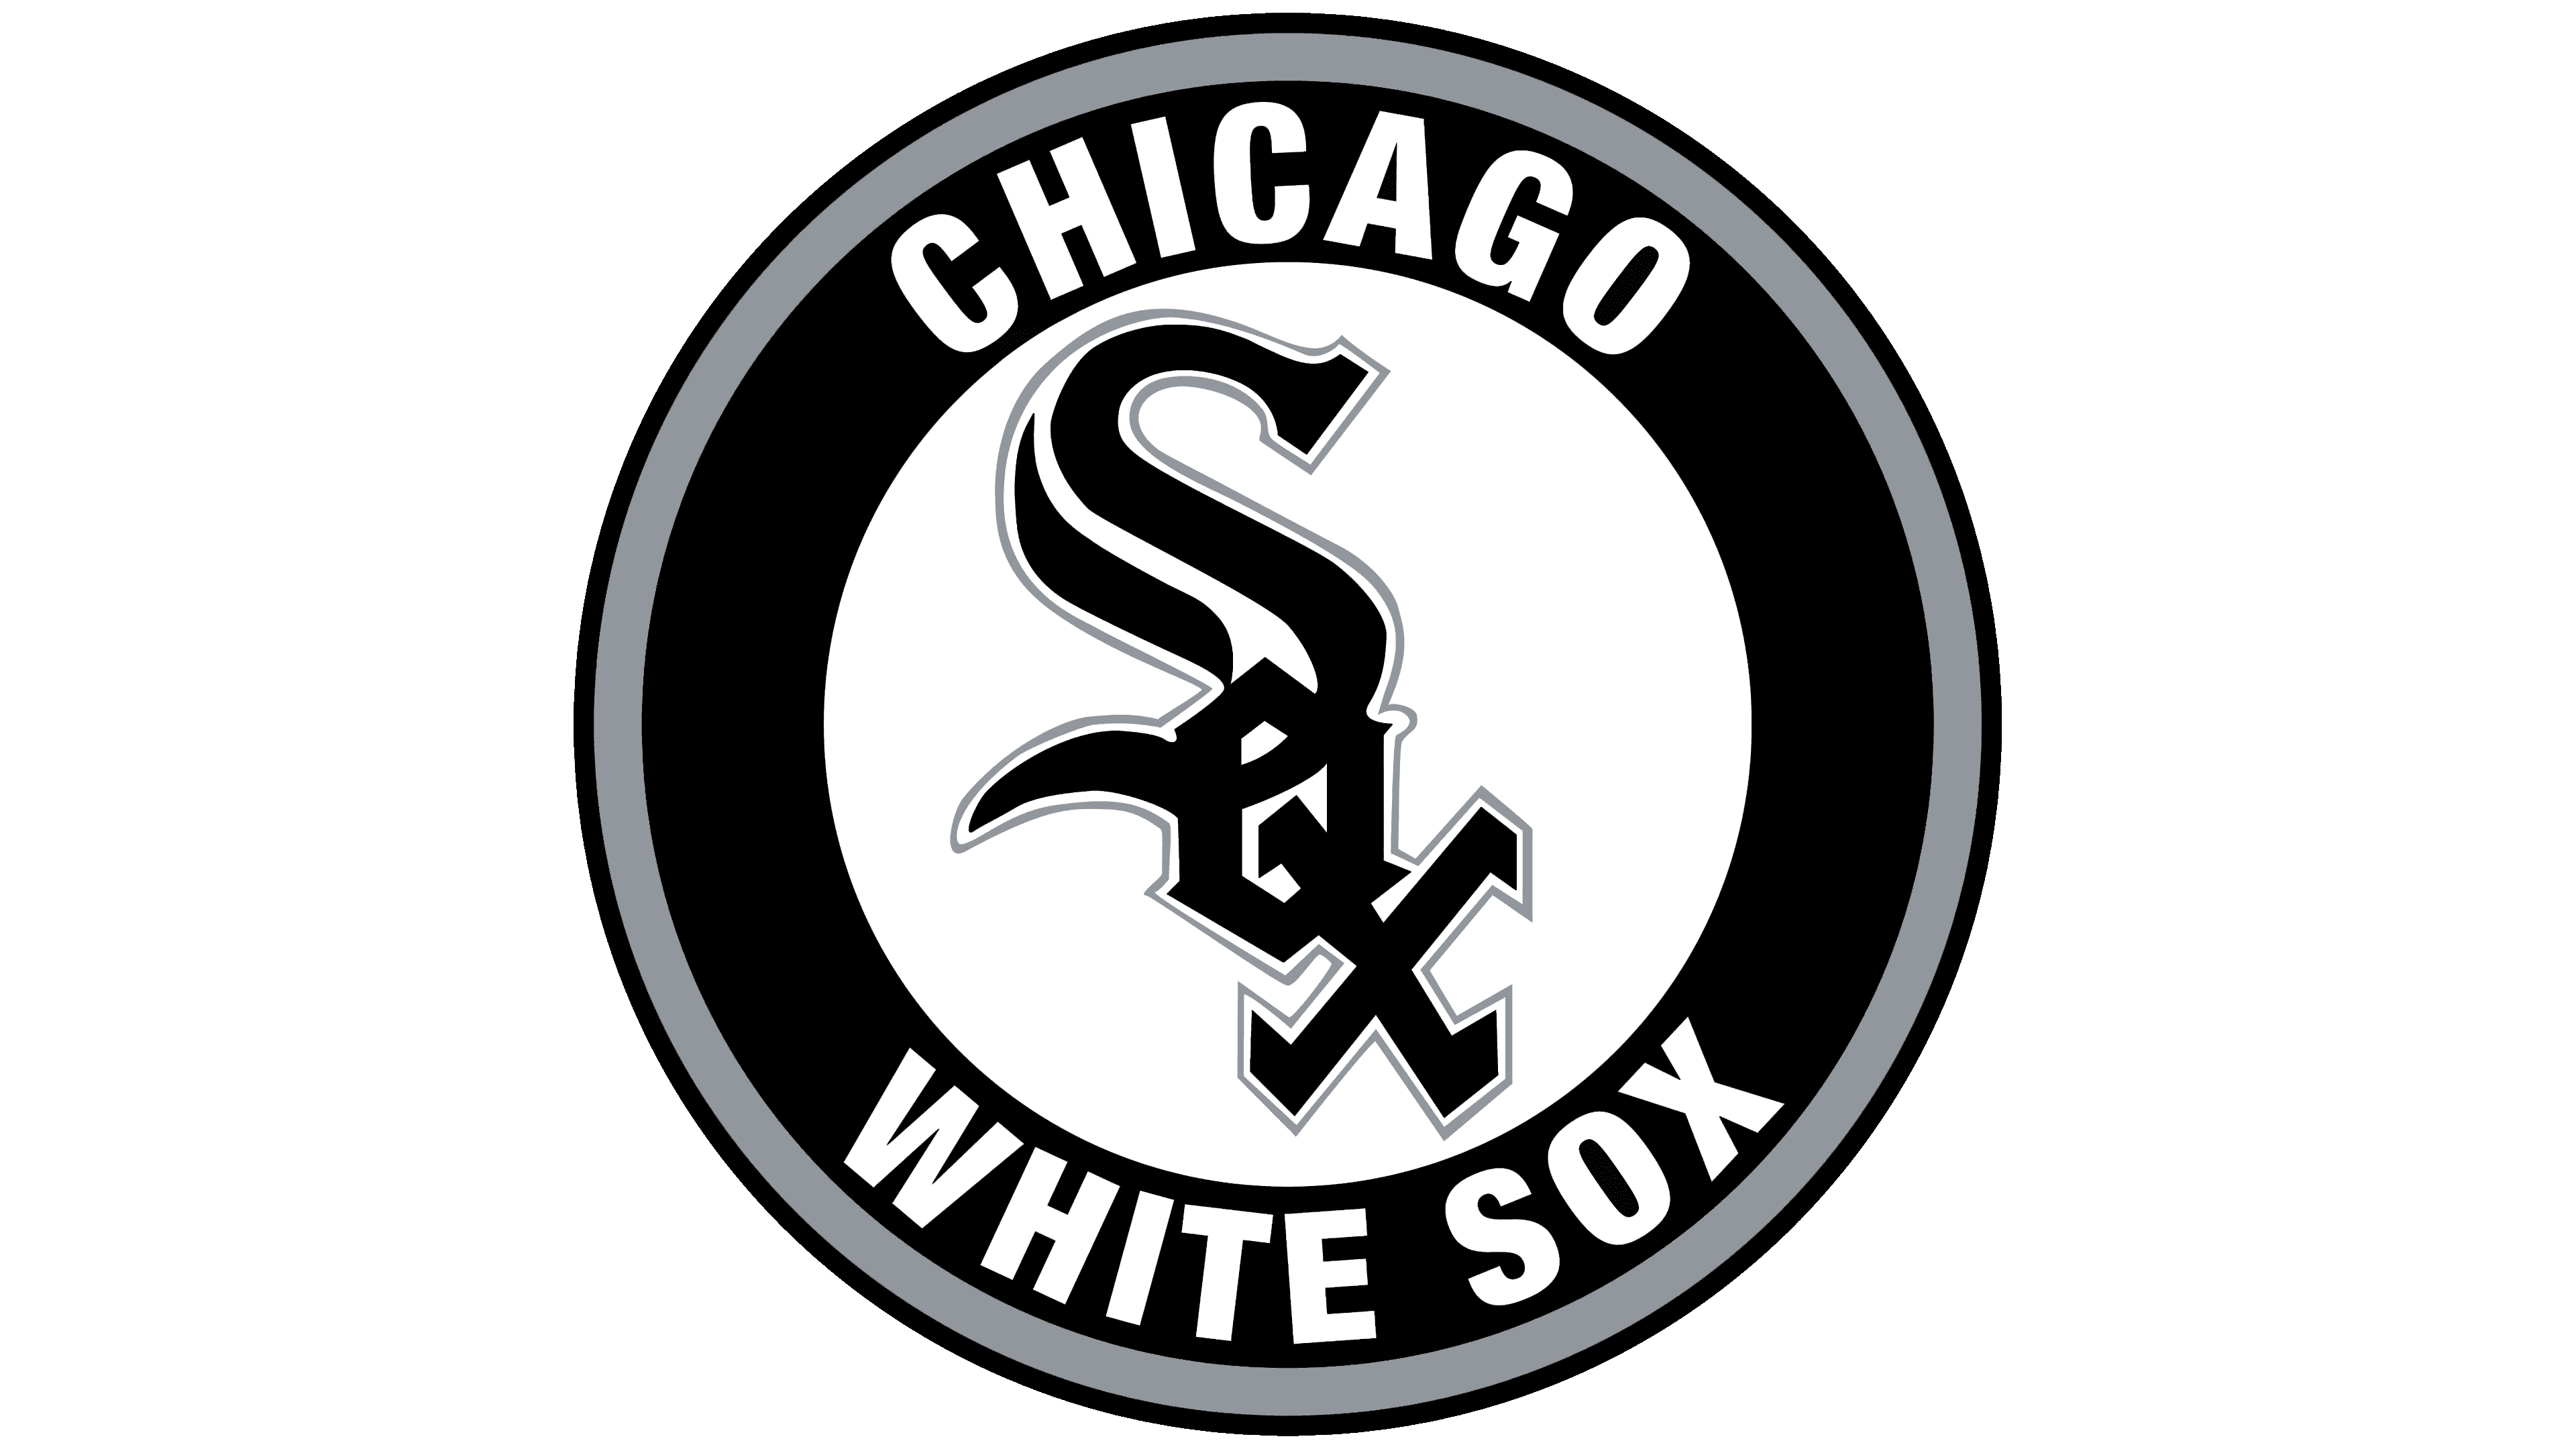 At afsløre Bare overfyldt glemme Chicago White Sox Logo, symbol, meaning, history, PNG, brand